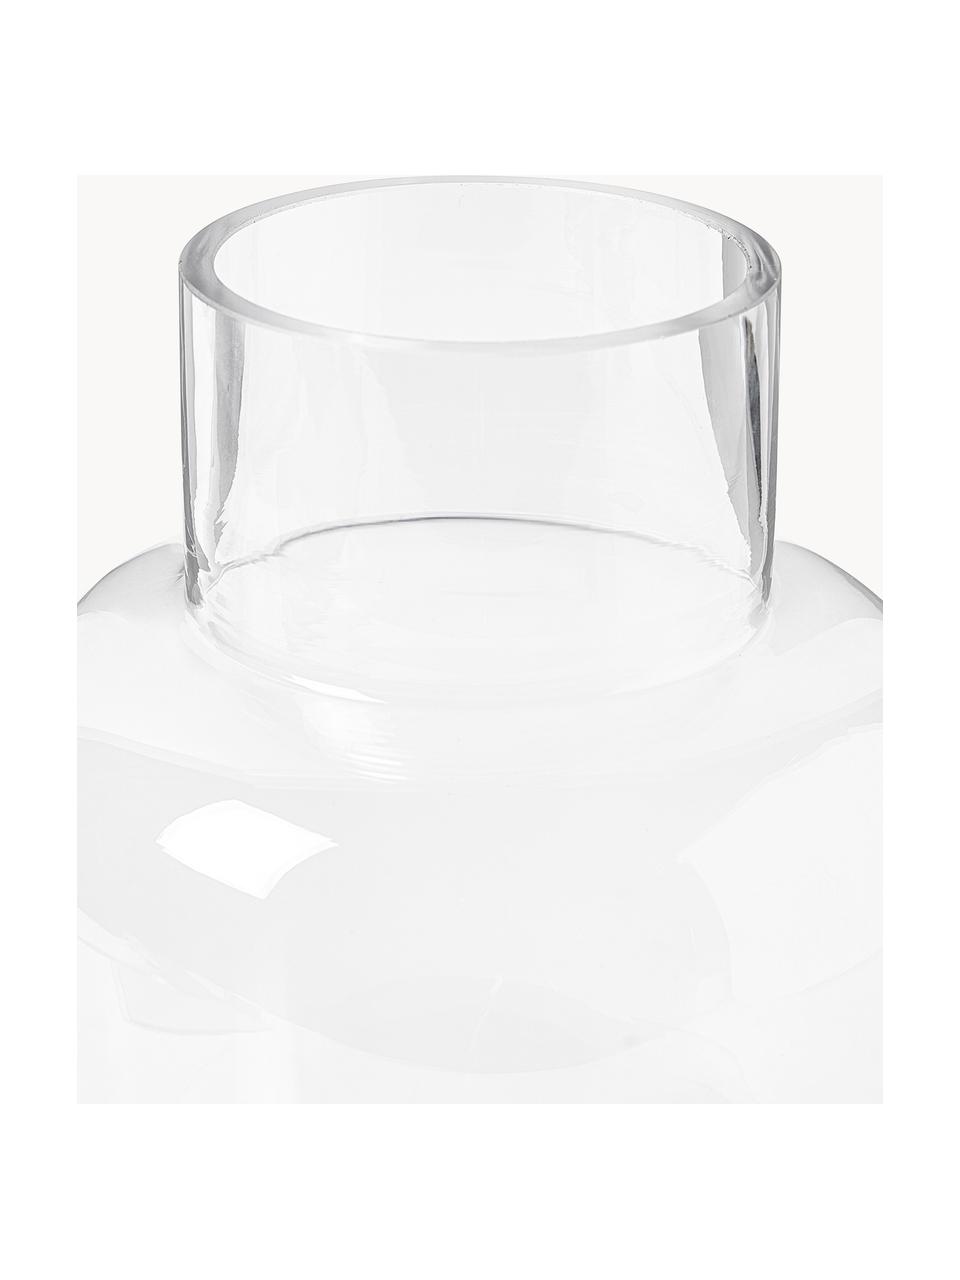 Vaso classico in vetro fatto a mano Lotta, alt. 25 cm, Vetro, Trasparente, Ø 18 x Alt. 25 cm